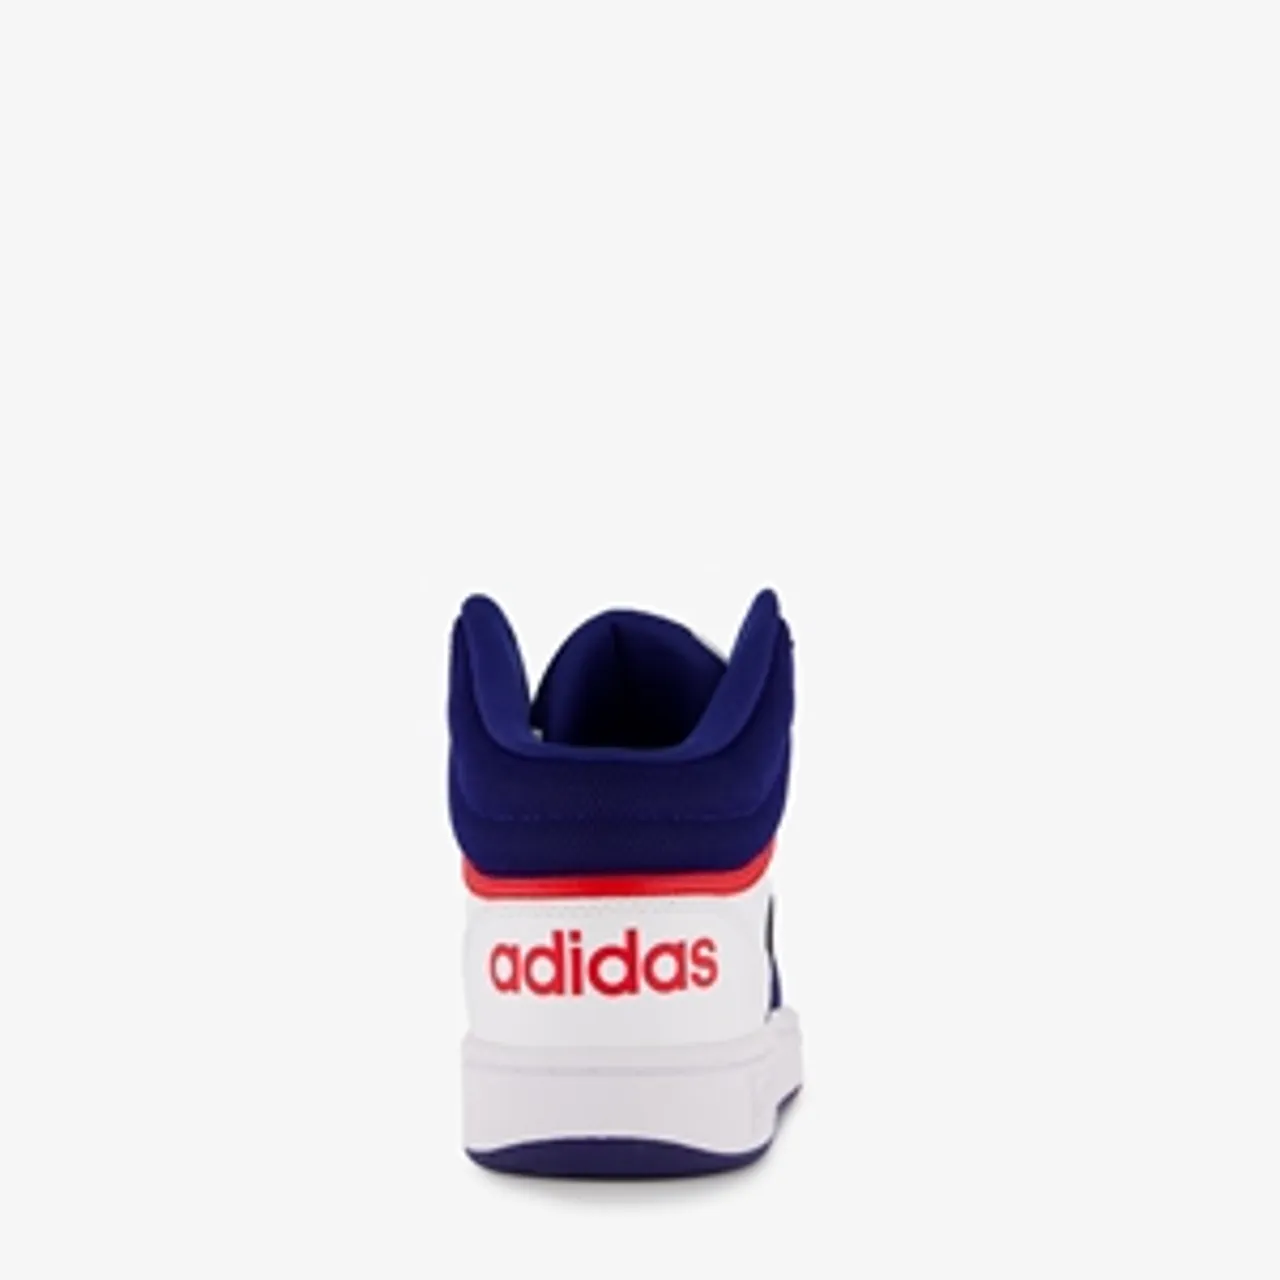 Adidas Hoops 3 kinder sneakers wit blauw